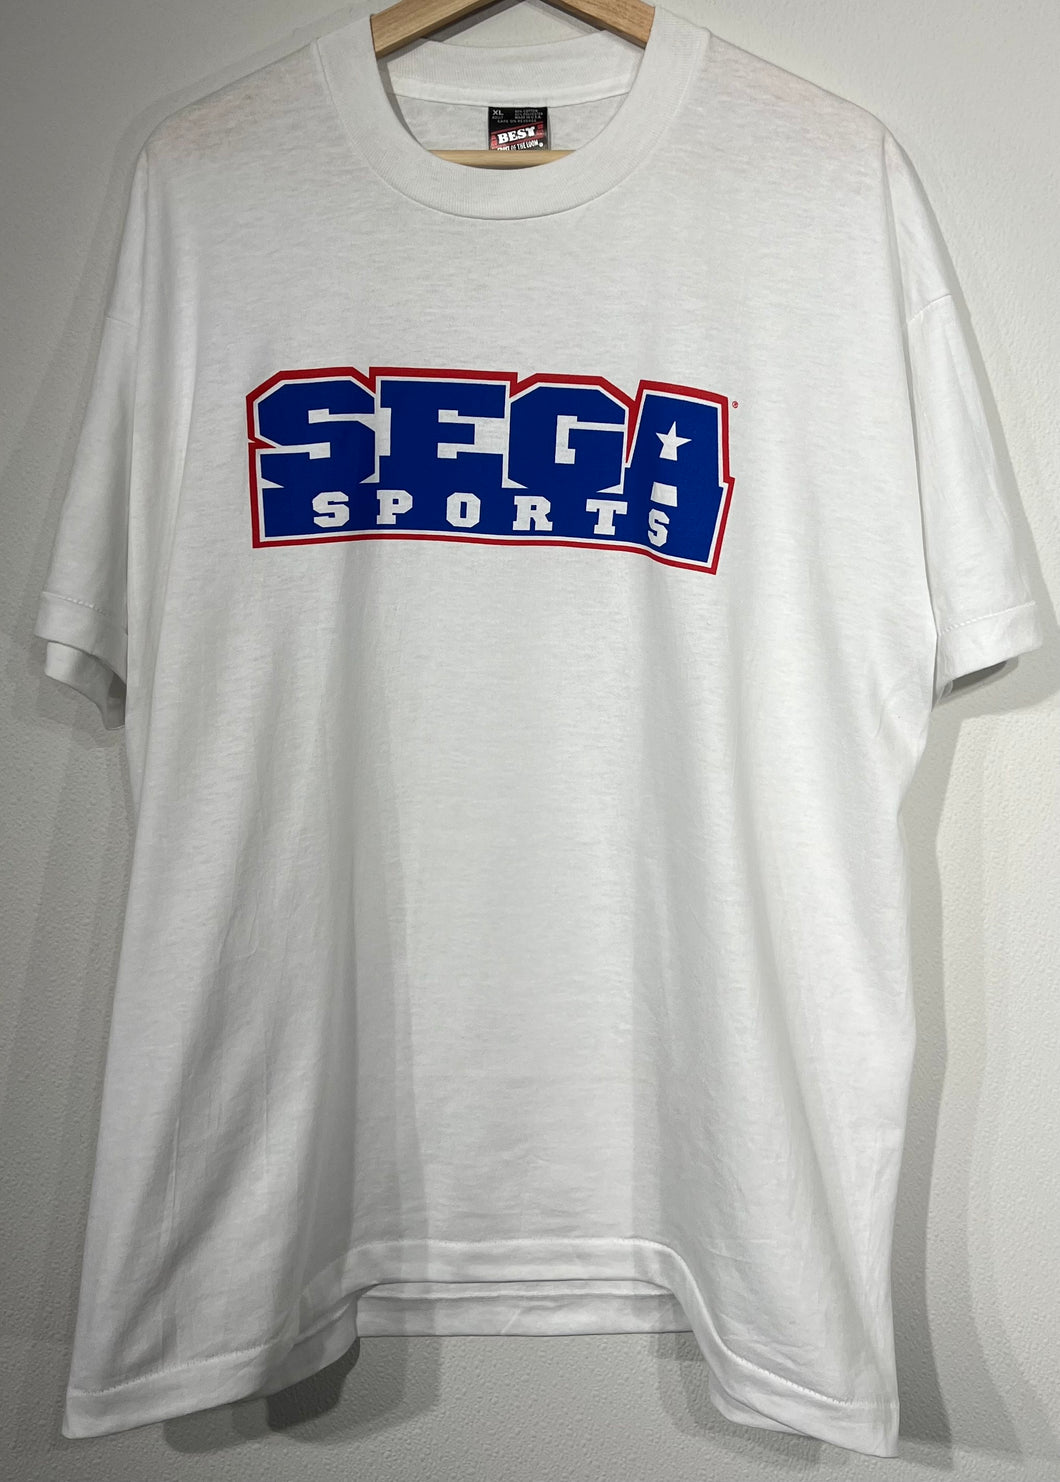 Vintage Sega Sports Tshirt sz XL New w/o Tags